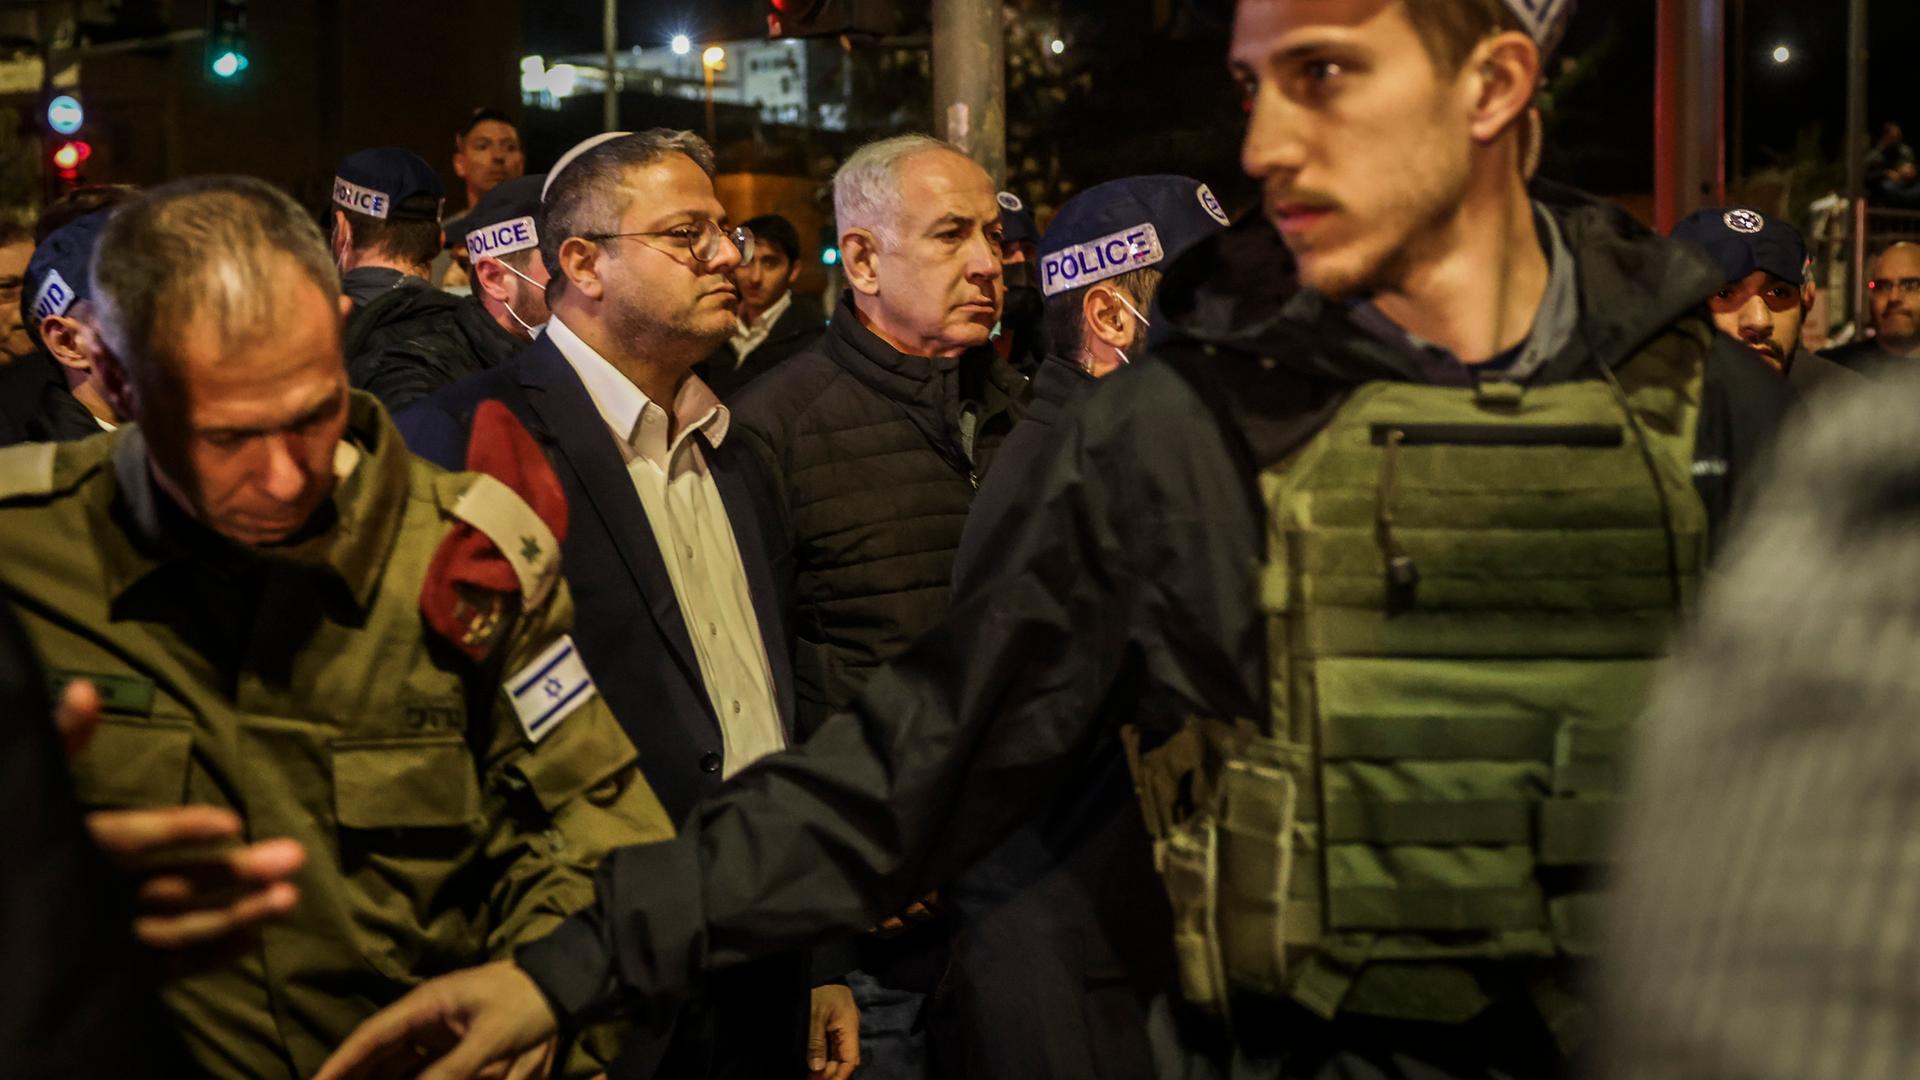 Nach Angriffen in Jerusalem - Israelisches Sicherheitskabinett beschließt Anti-Terror-Maßnahmen